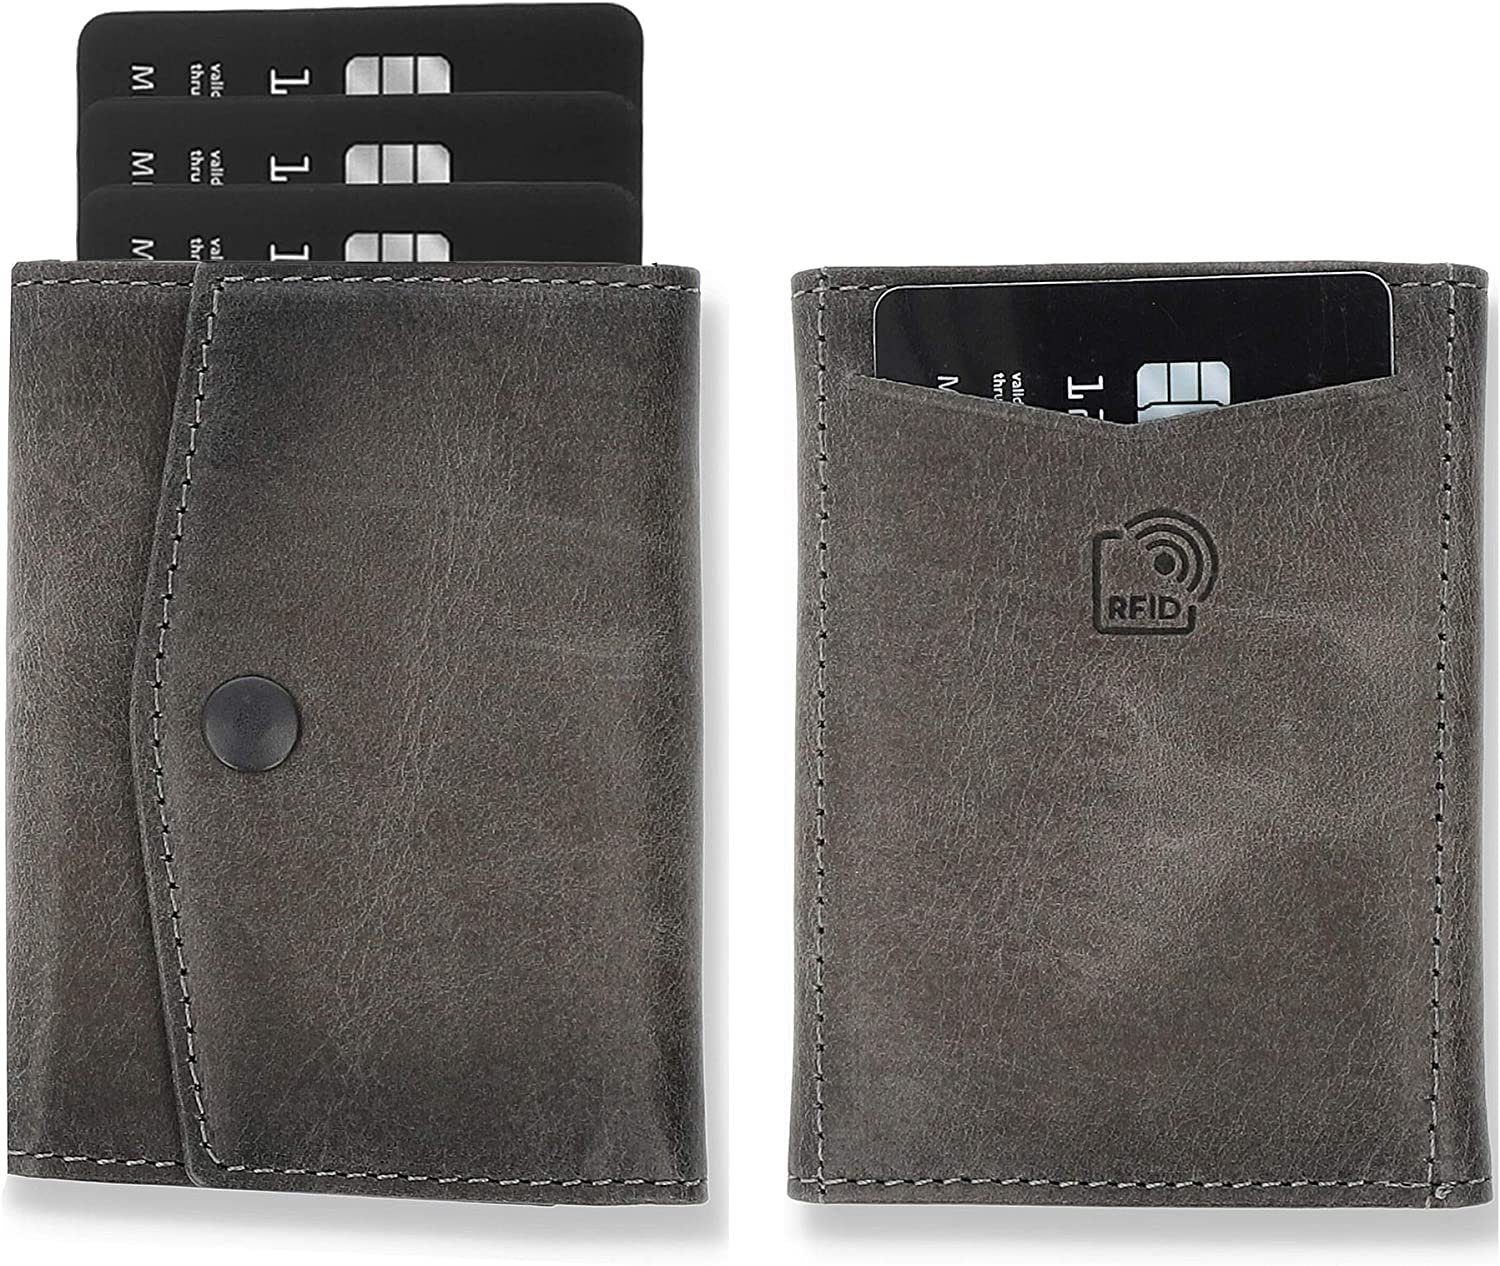 Solo Pelle Geldbörse Slim Wallet mit Münzfach I Geldbeutel mit RFID Schutz I für 12 Karten, RFID Schutz, Echtes Leder, dünne Geldbörse Steingrau ohne Münzfach